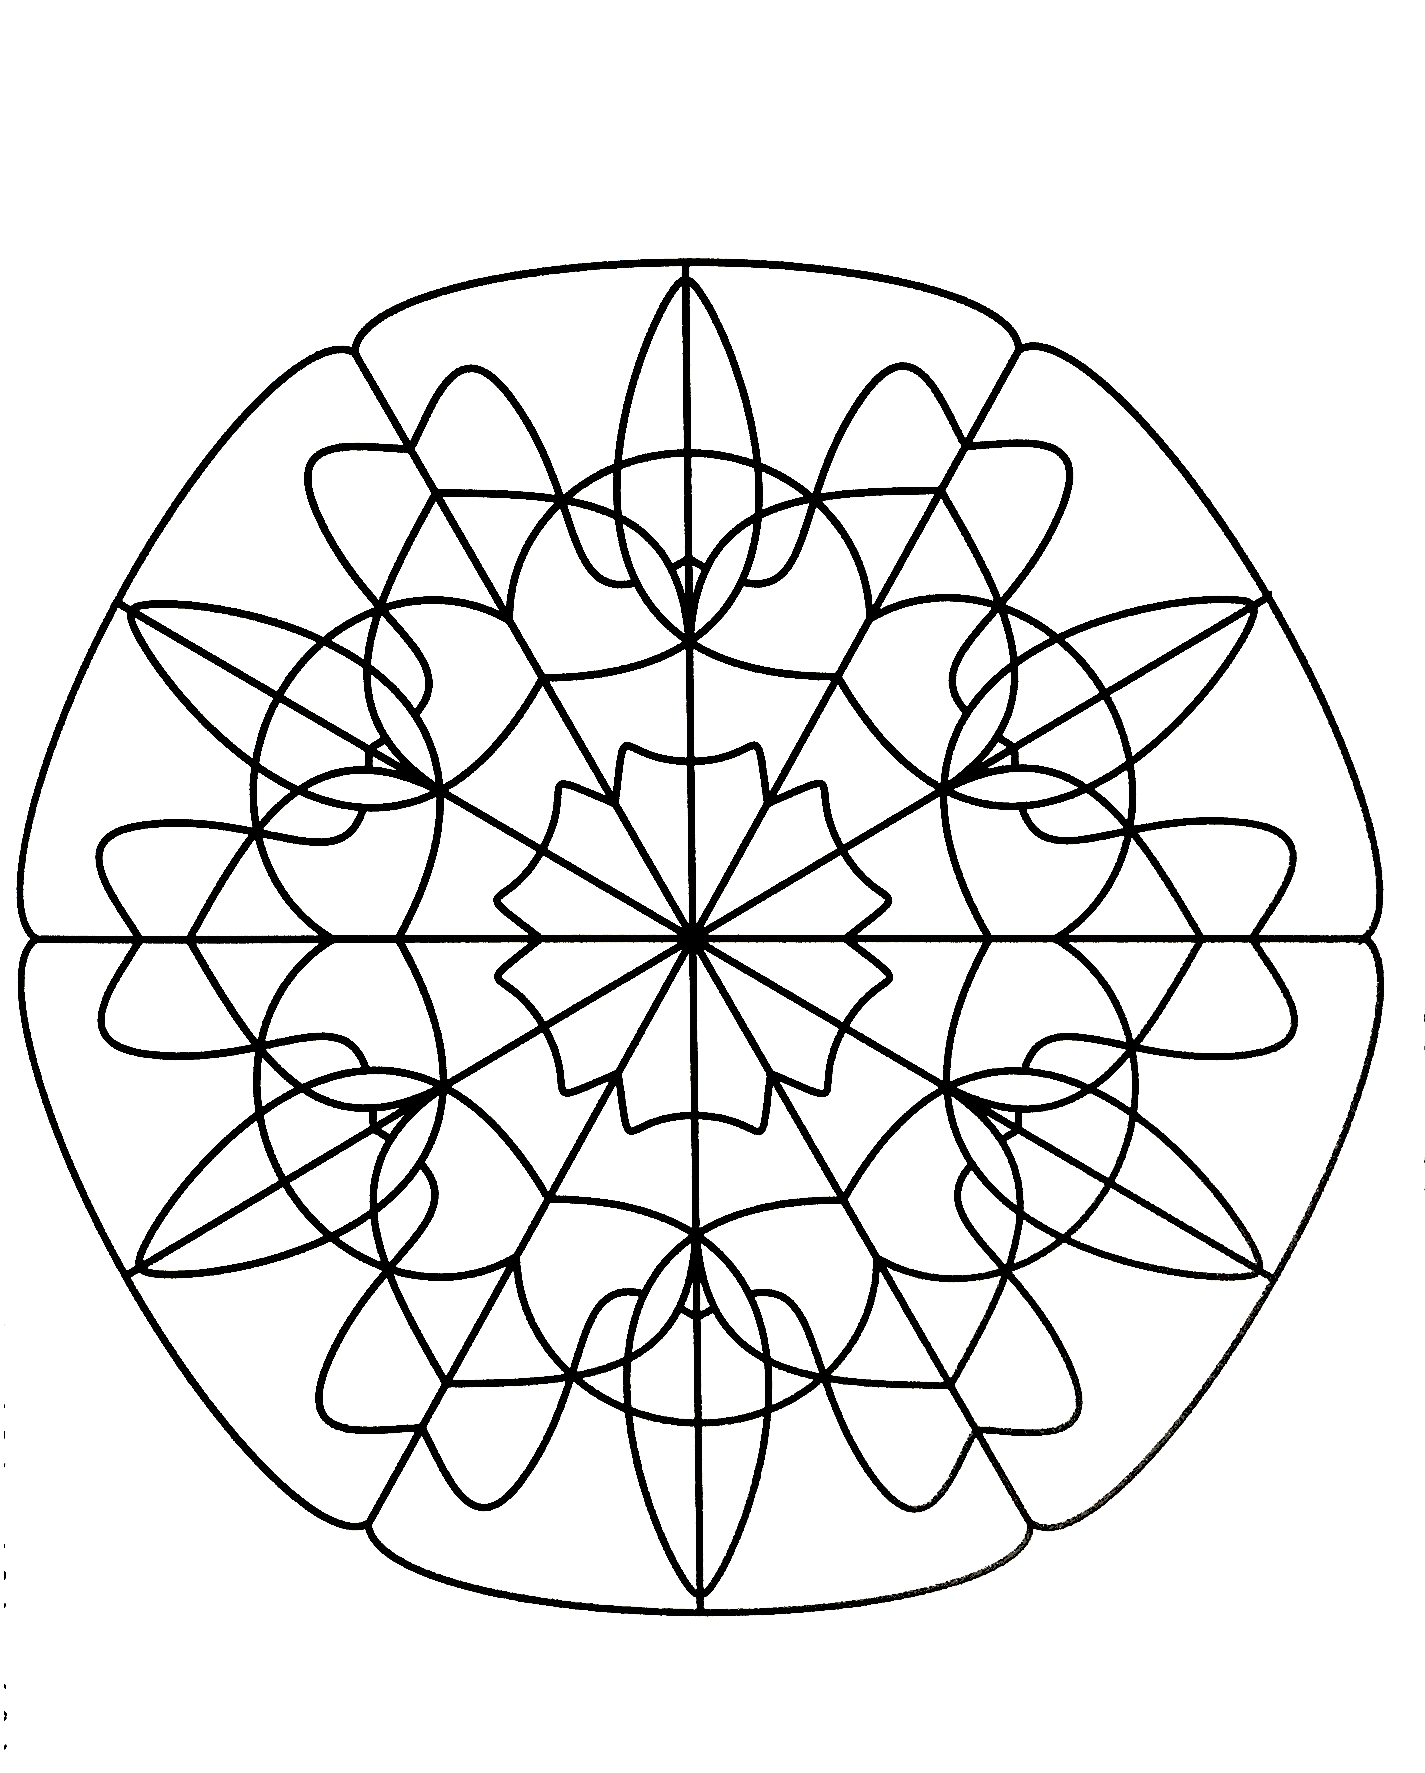 Prepare os seus marcadores e lápis para colorir esta Mandala cheia de pequenos pormenores e áreas interligadas.